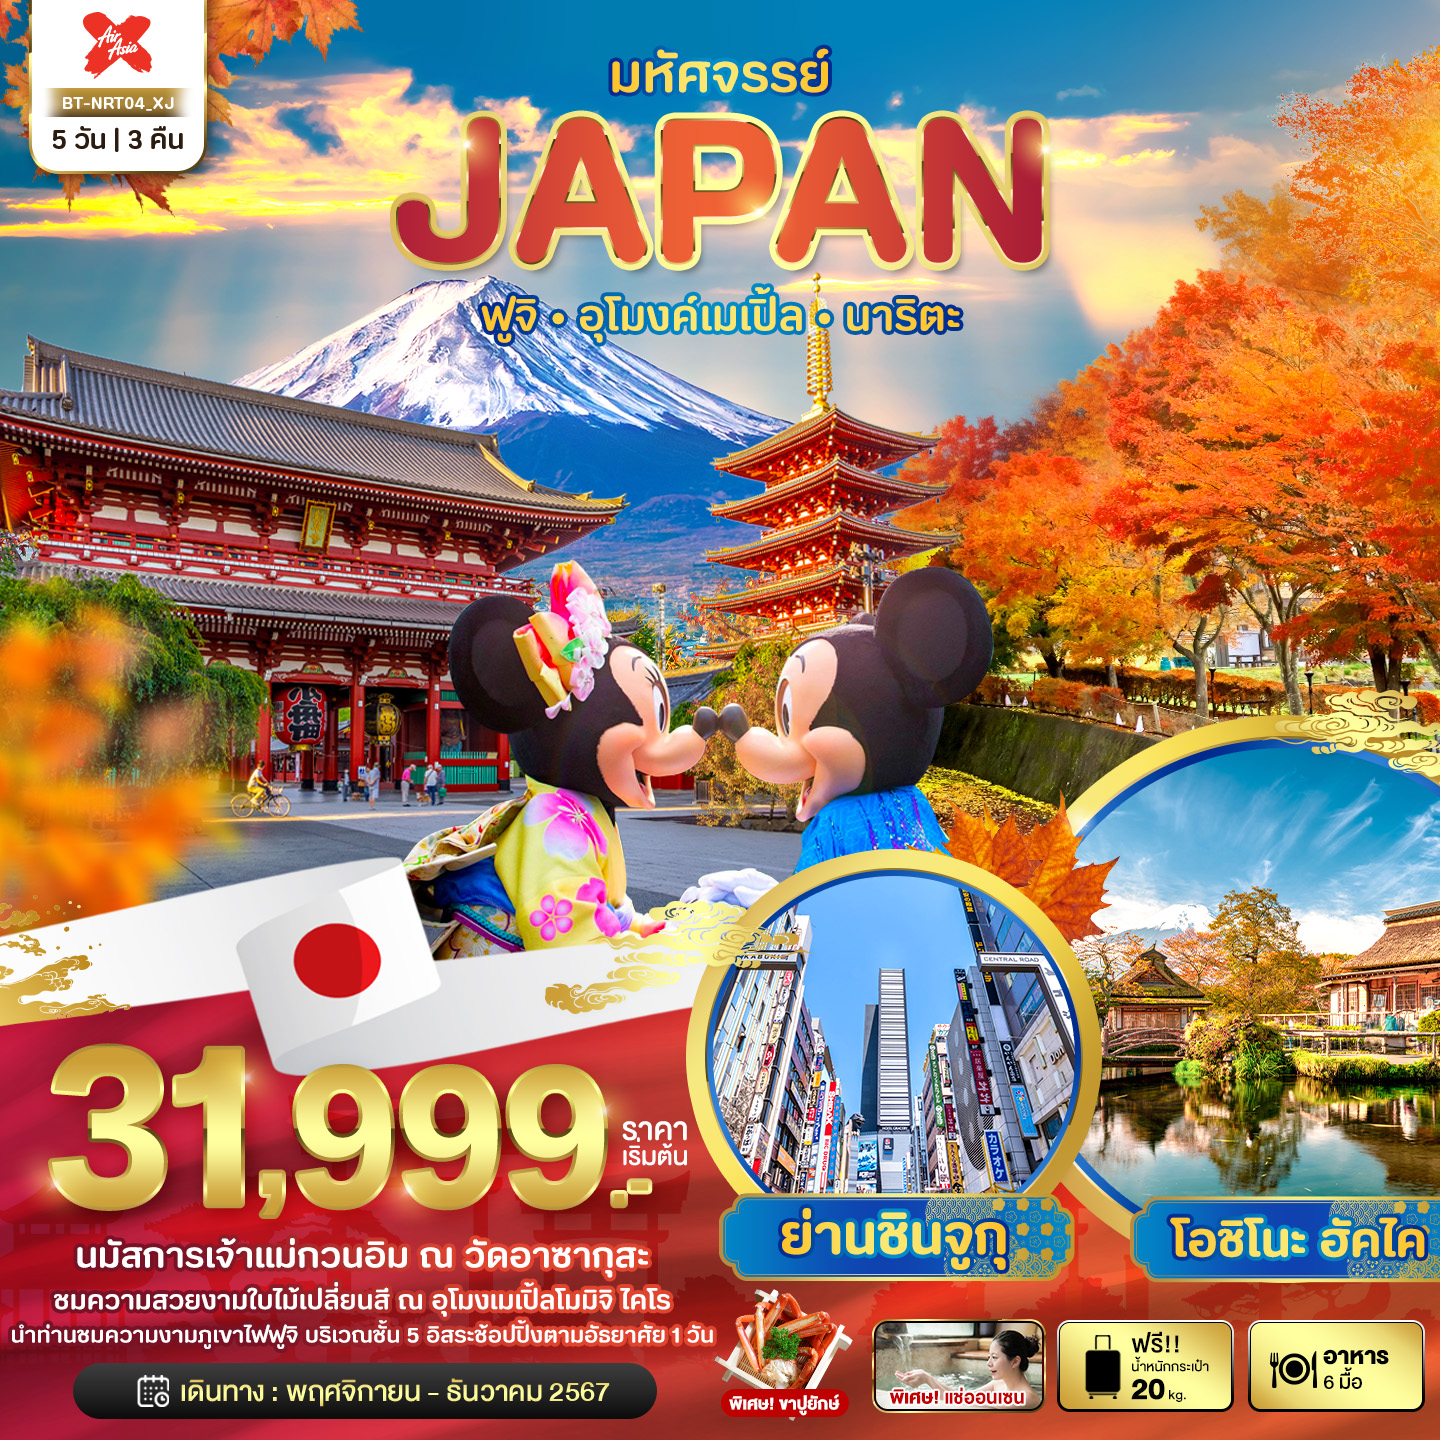 ทัวร์ญี่ปุ่น มหัศจรรย์ JAPAN ฟูจิ อุโมงค์เมเปิ้ล นาริตะ 5 วัน 3 คืน